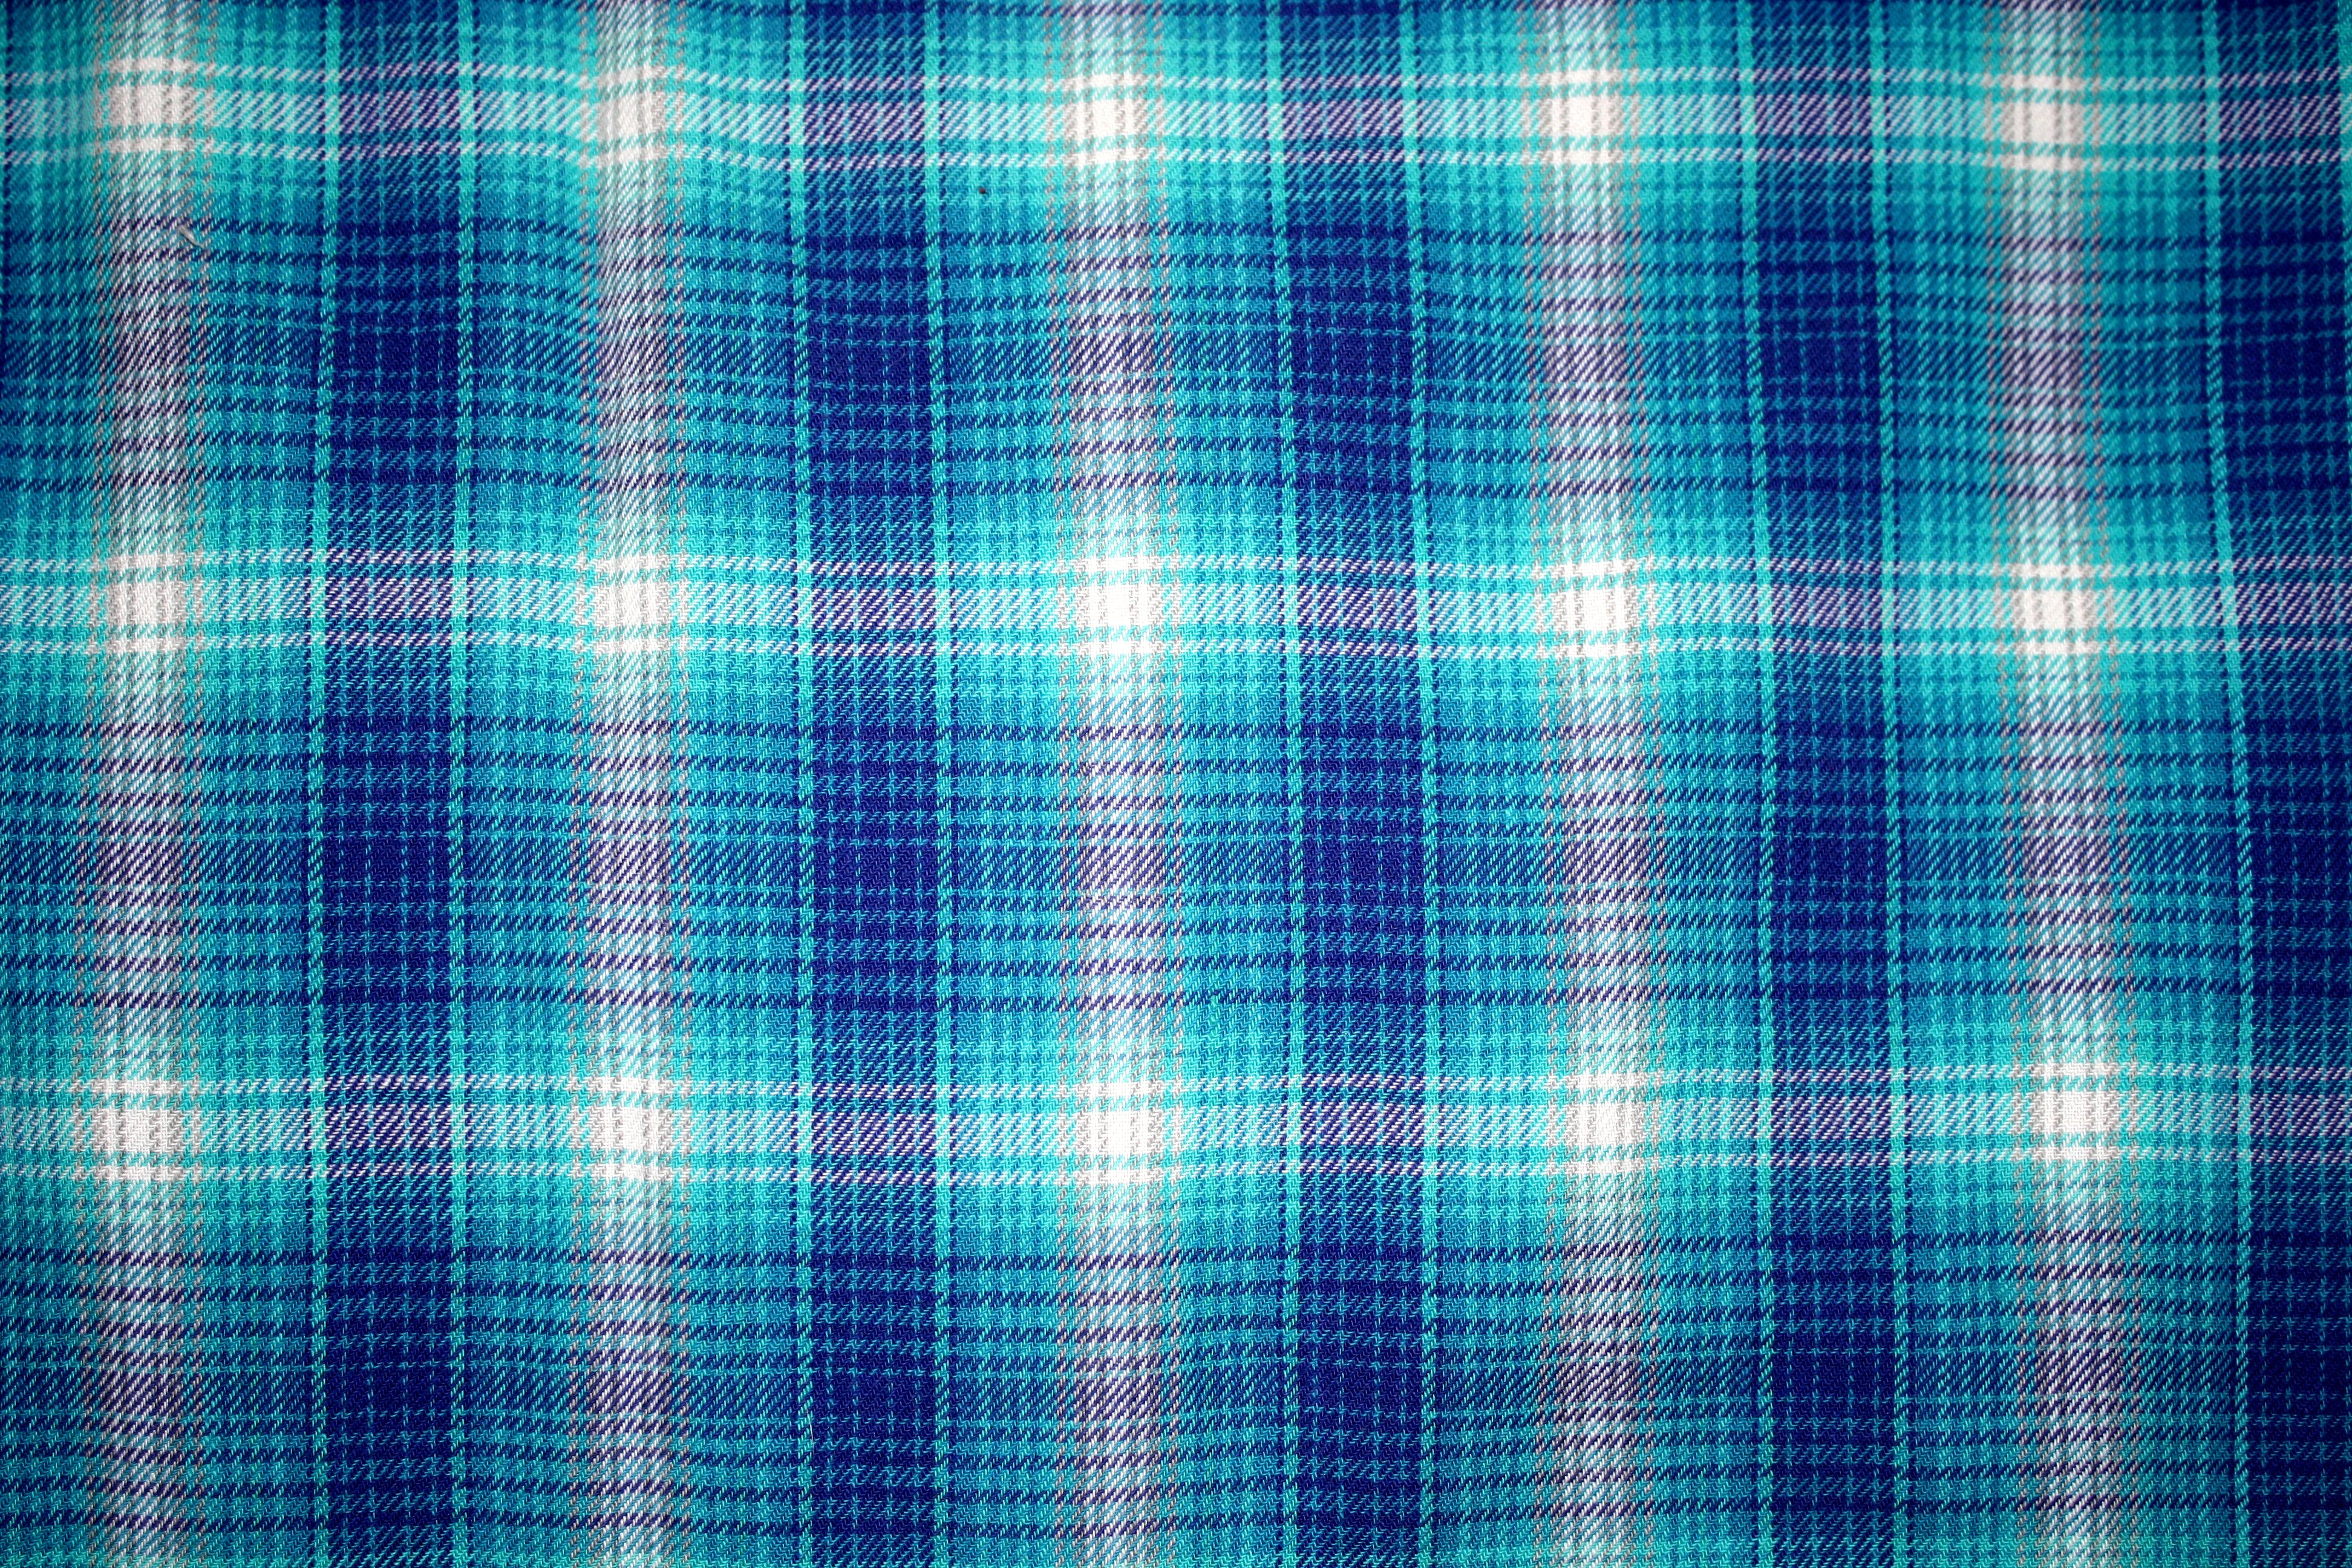 Blue Plaid Fabric Texture Picture Free Photograph Photos Public